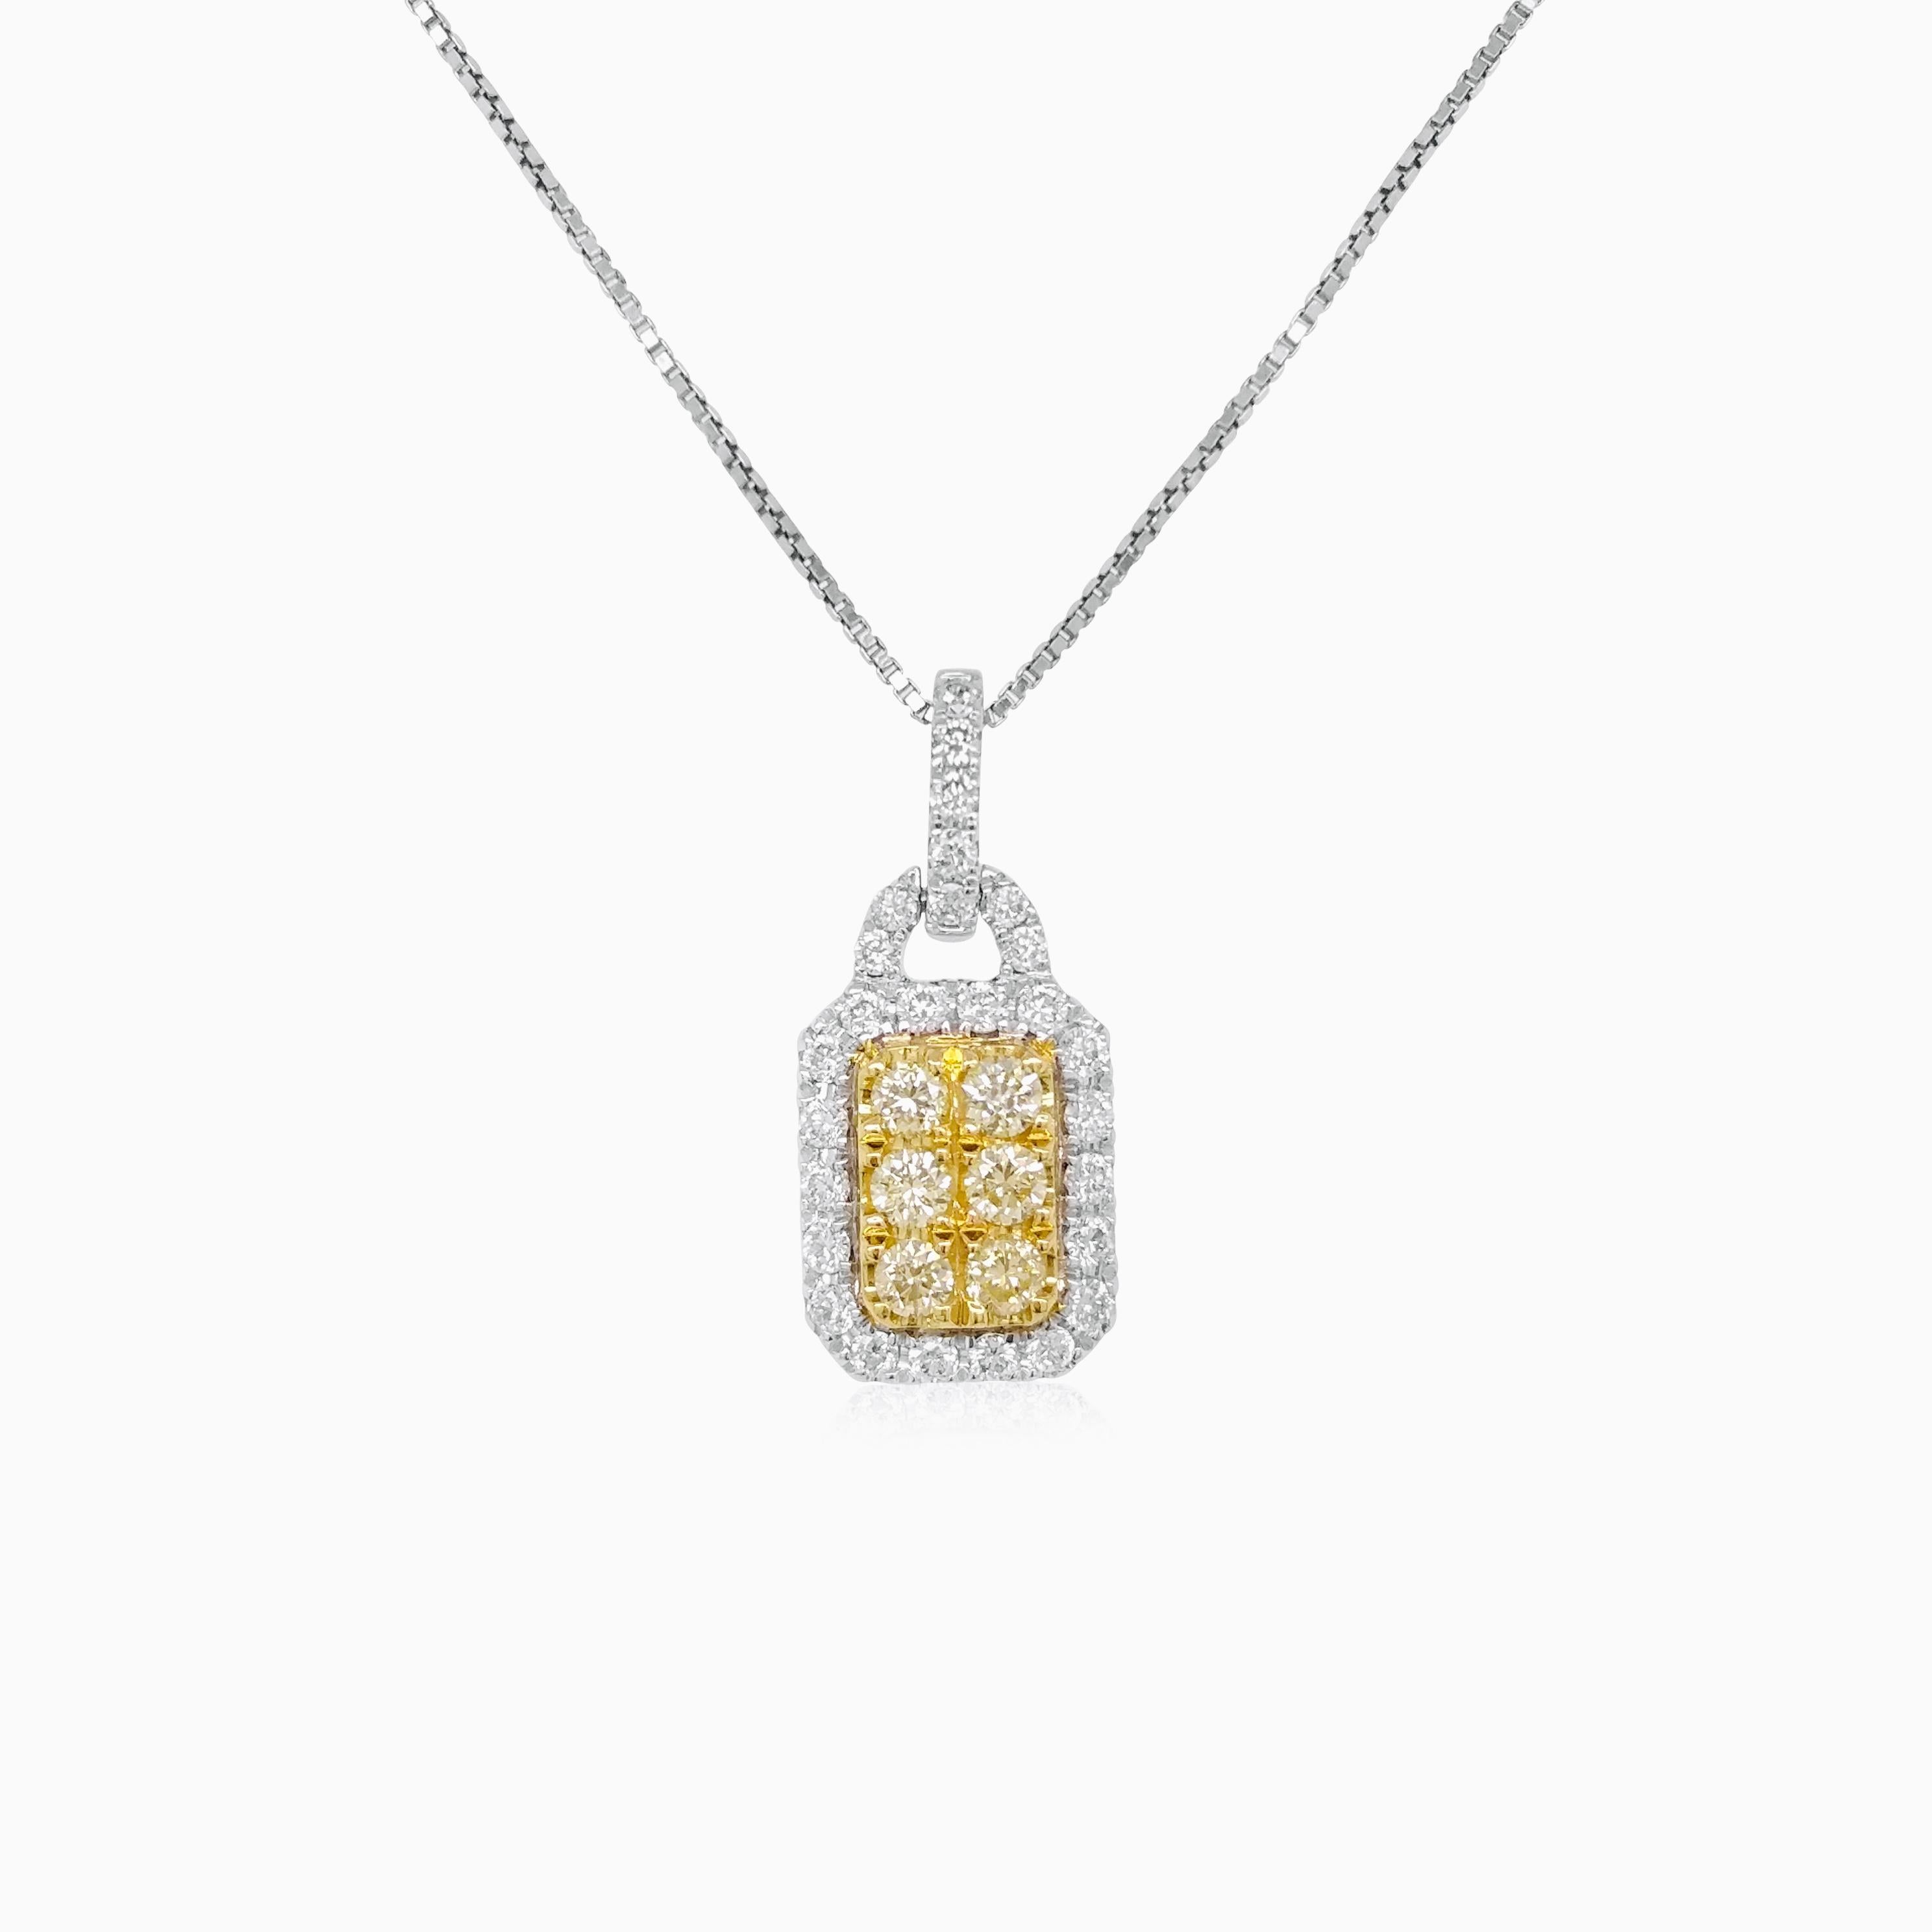 Anhänger-Halskette mit gelben Naturdiamanten und weißen Diamanten, gefasst in Gold. Ein klassisches Stück mit Charme.

Gelbe Diamanten - 0,14 Karat
Weiße Diamanten - 0,17 Karat


HYT Jewelry ist ein Unternehmen in Privatbesitz mit Hauptsitz in